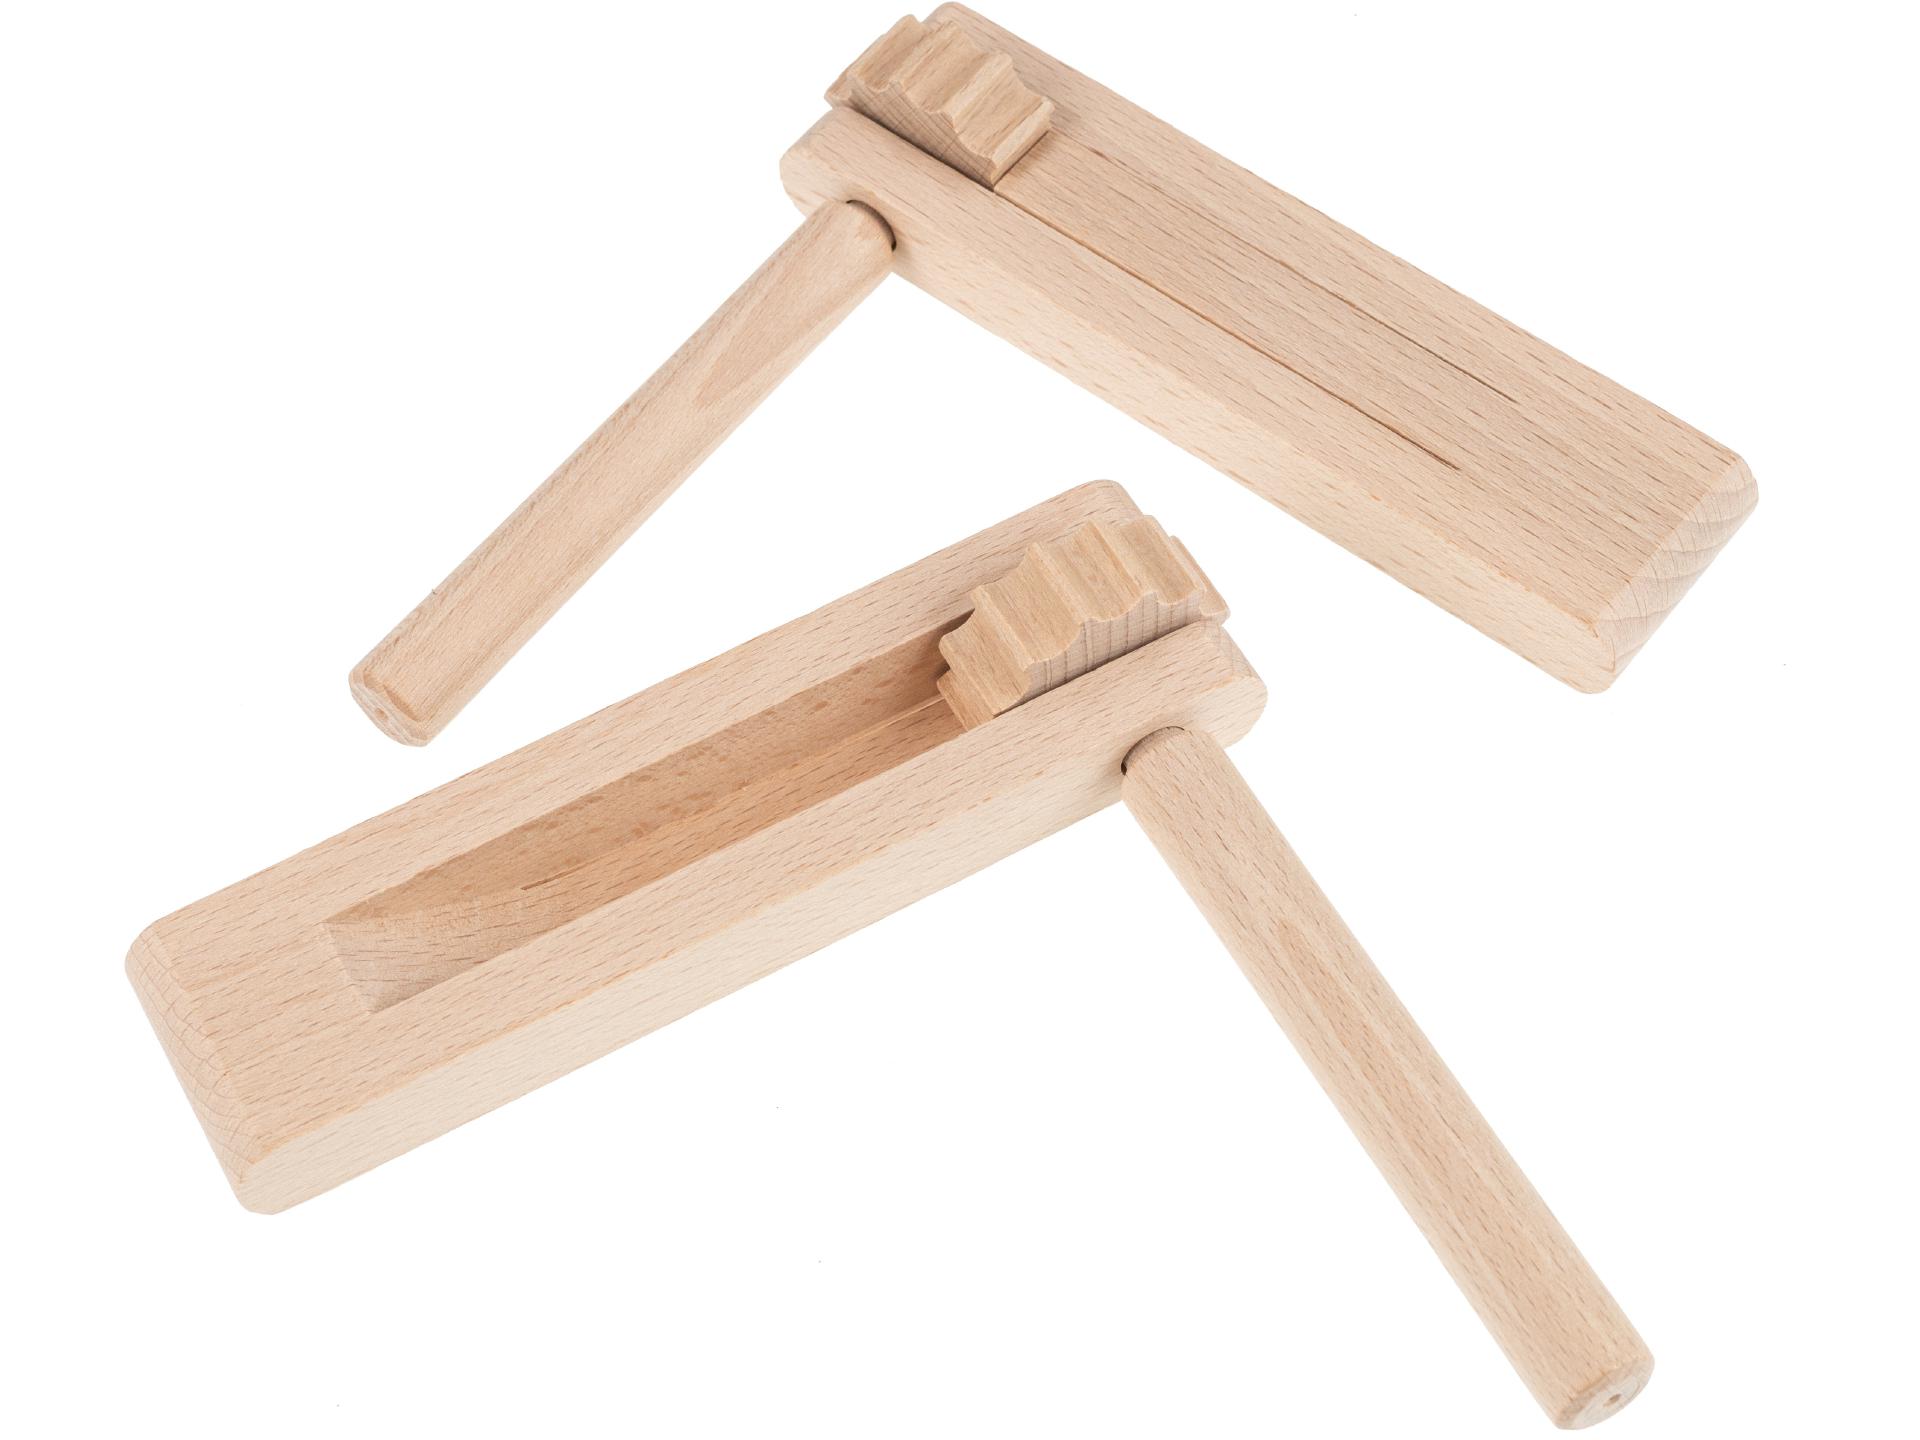 Ratsche aus Buchenholz - 15 x 15 cm - Handgefertigte Holzrassel für Kinder und Erwachsene